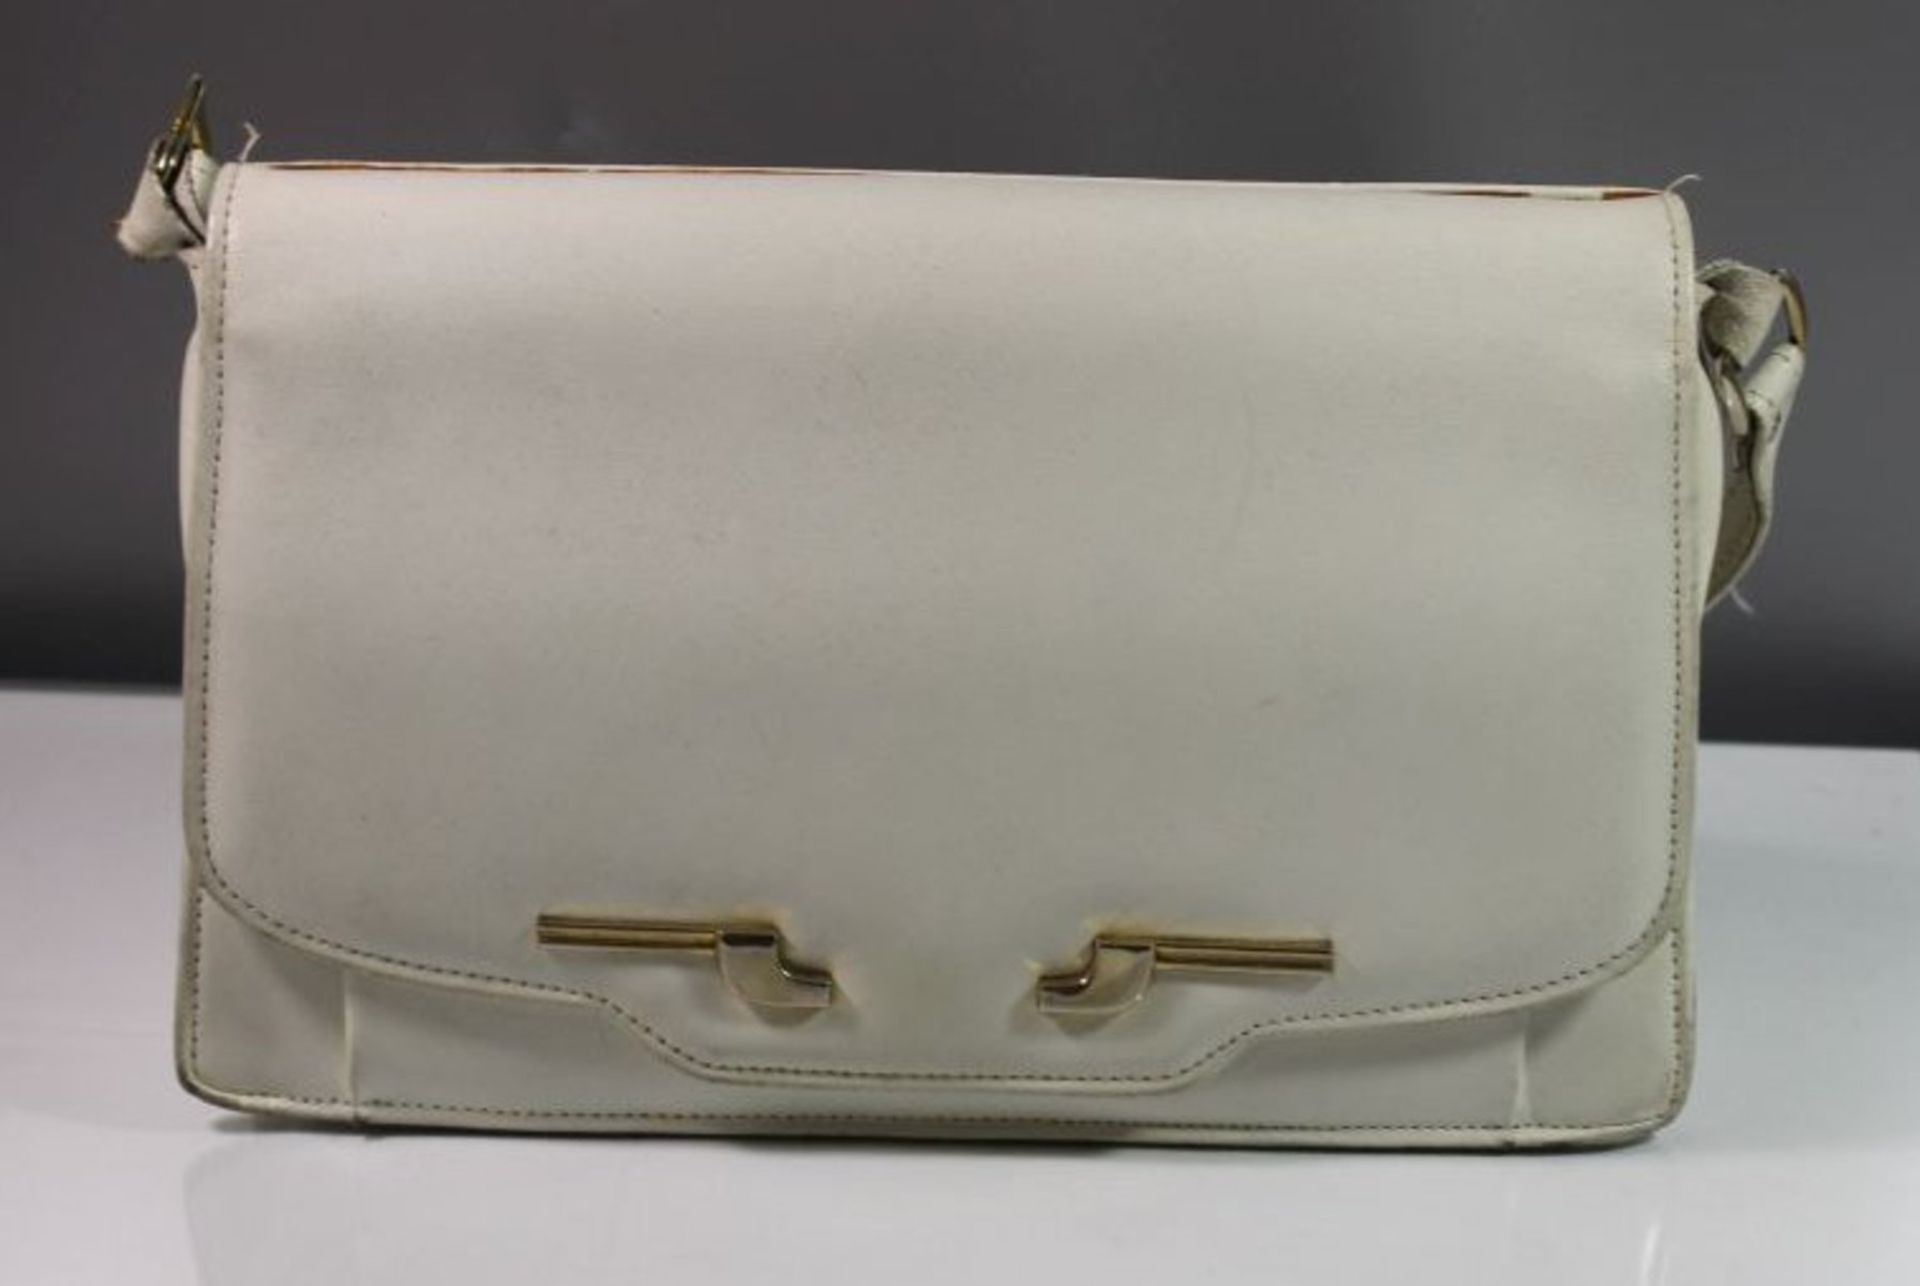 Damenhandtasche, weisses Leder, Tragespuren und Beschädigungen, älter, 19 x 28cm. - Bild 2 aus 5